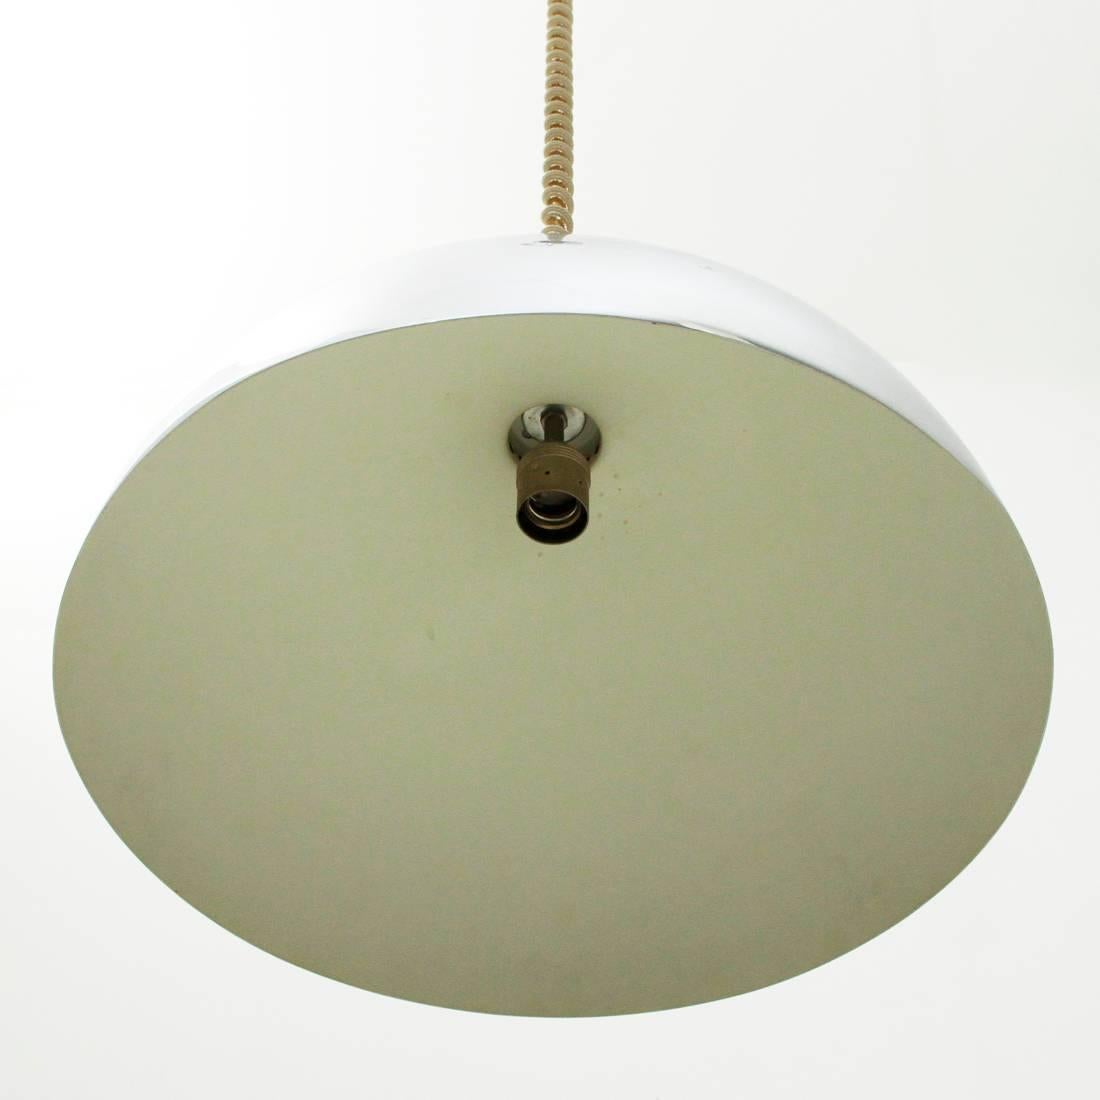 Italian Chromed Pendant Lamp Model AM-AS, Franco Albini for Sirrah, 1960s